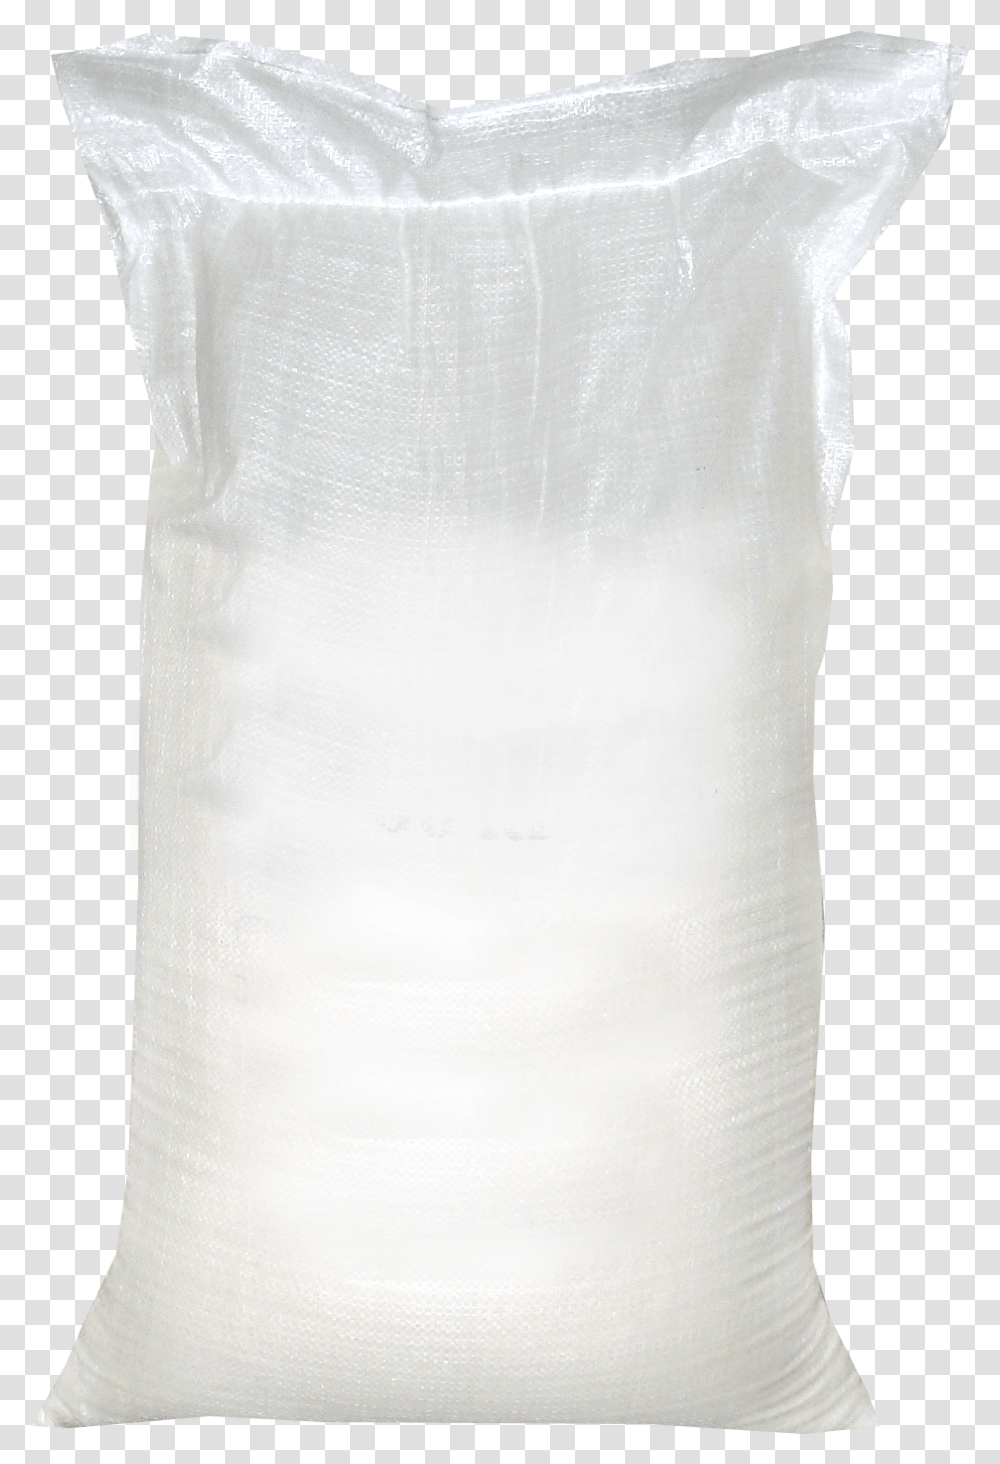 Salt Meshok Sahara, Undershirt, Apparel, Bag Transparent Png